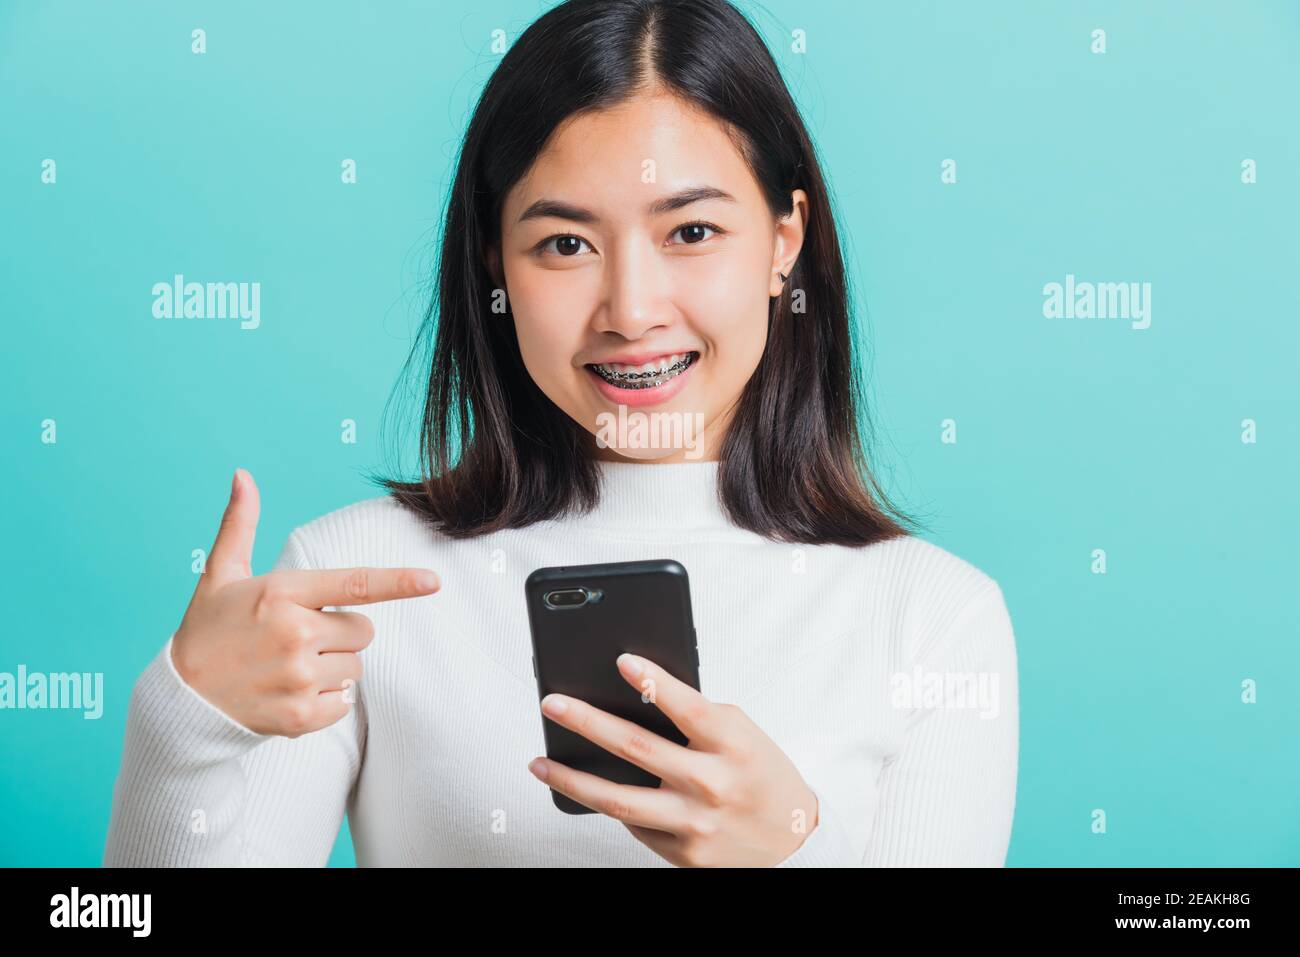 une femme sourit qu'elle pointe le doigt vers un smartphone Banque D'Images